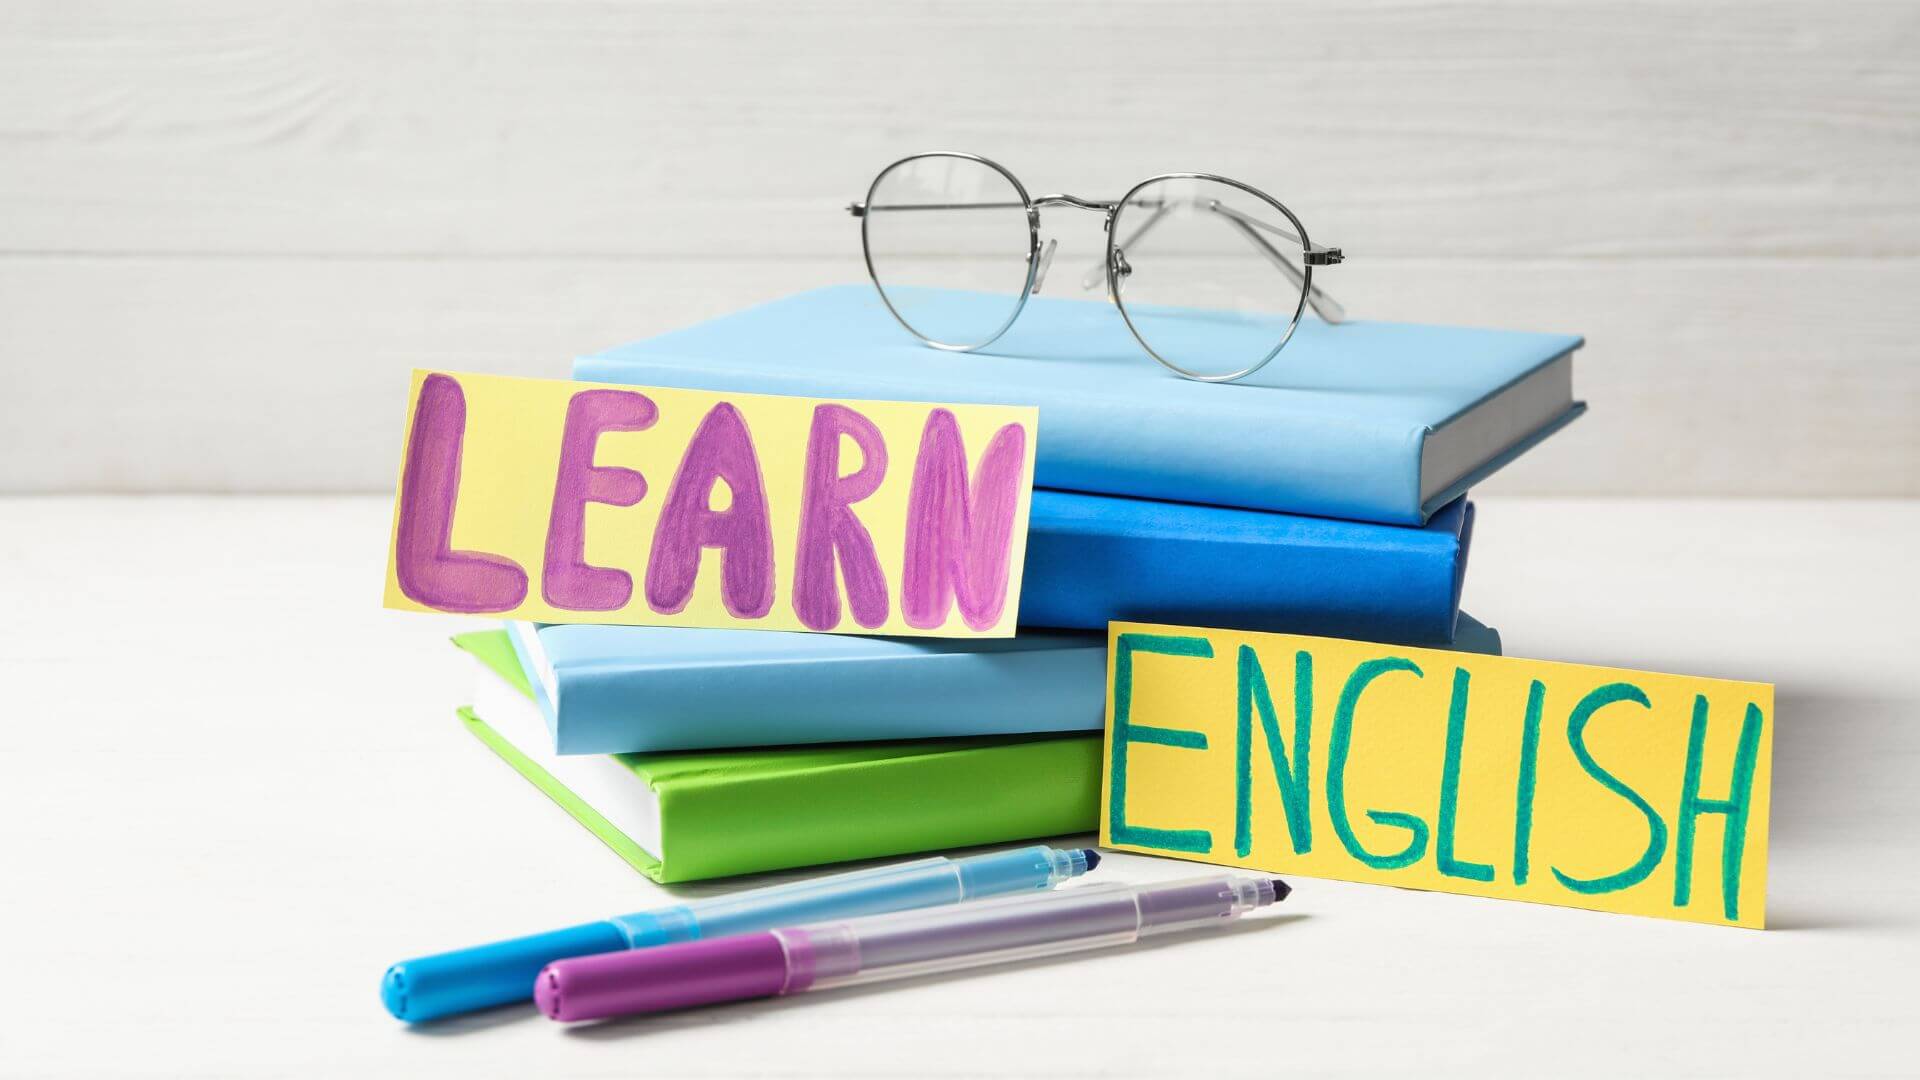 learn English, learn to speak English, English learning, study English, learning English